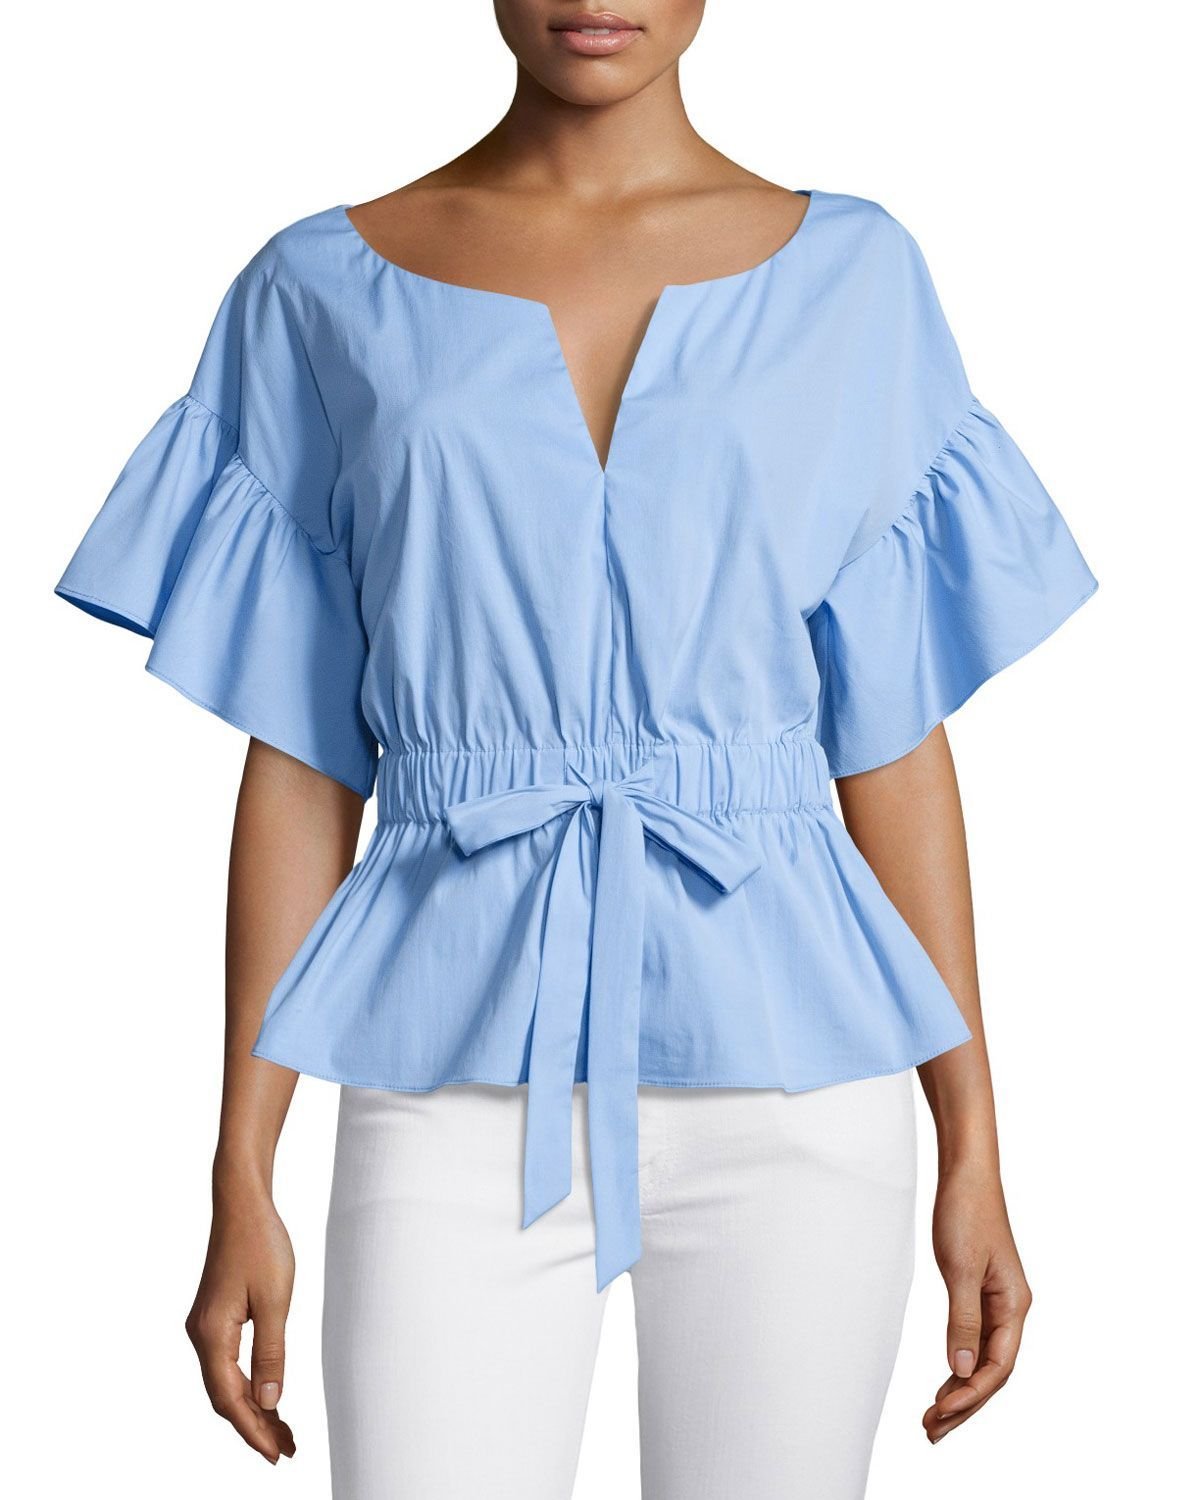 Легкие летние рукава. Летние блузки. Летняя блузка с воланами. Летние блузки для женщин. Легкие летние блузки.